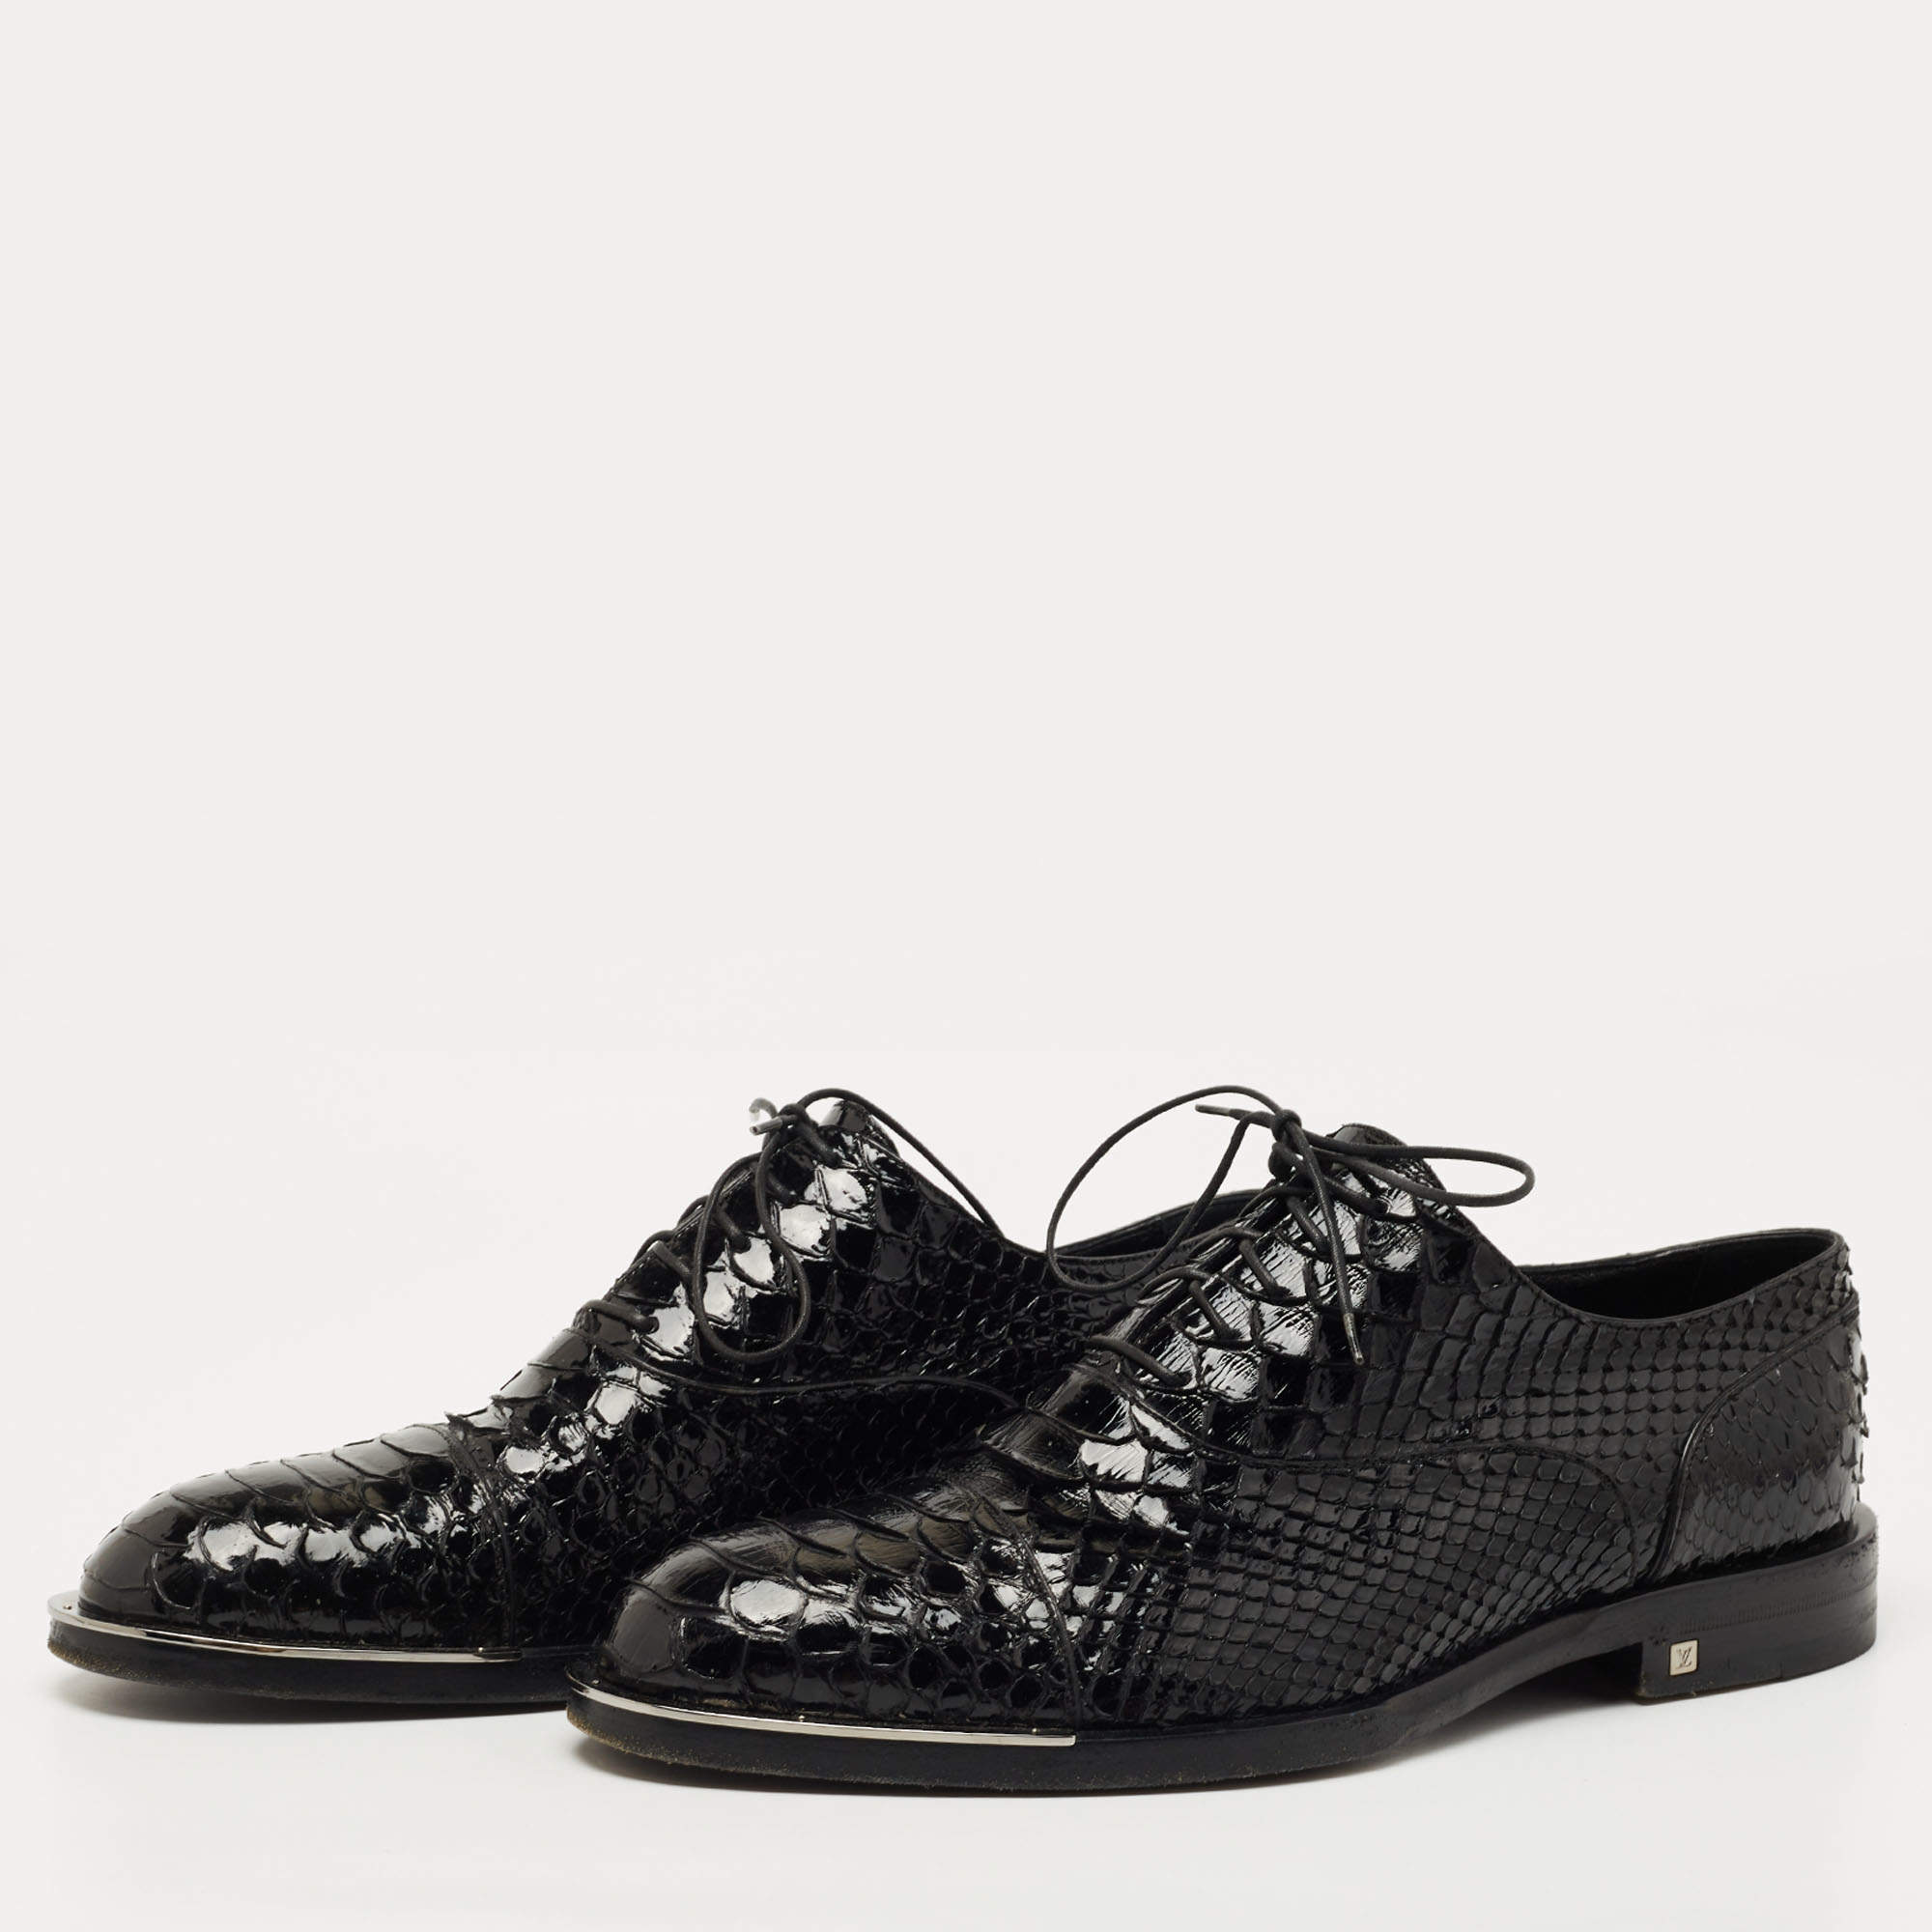 Louis Vuitton Crocodile Derby Shoes - Brown Oxfords, Shoes